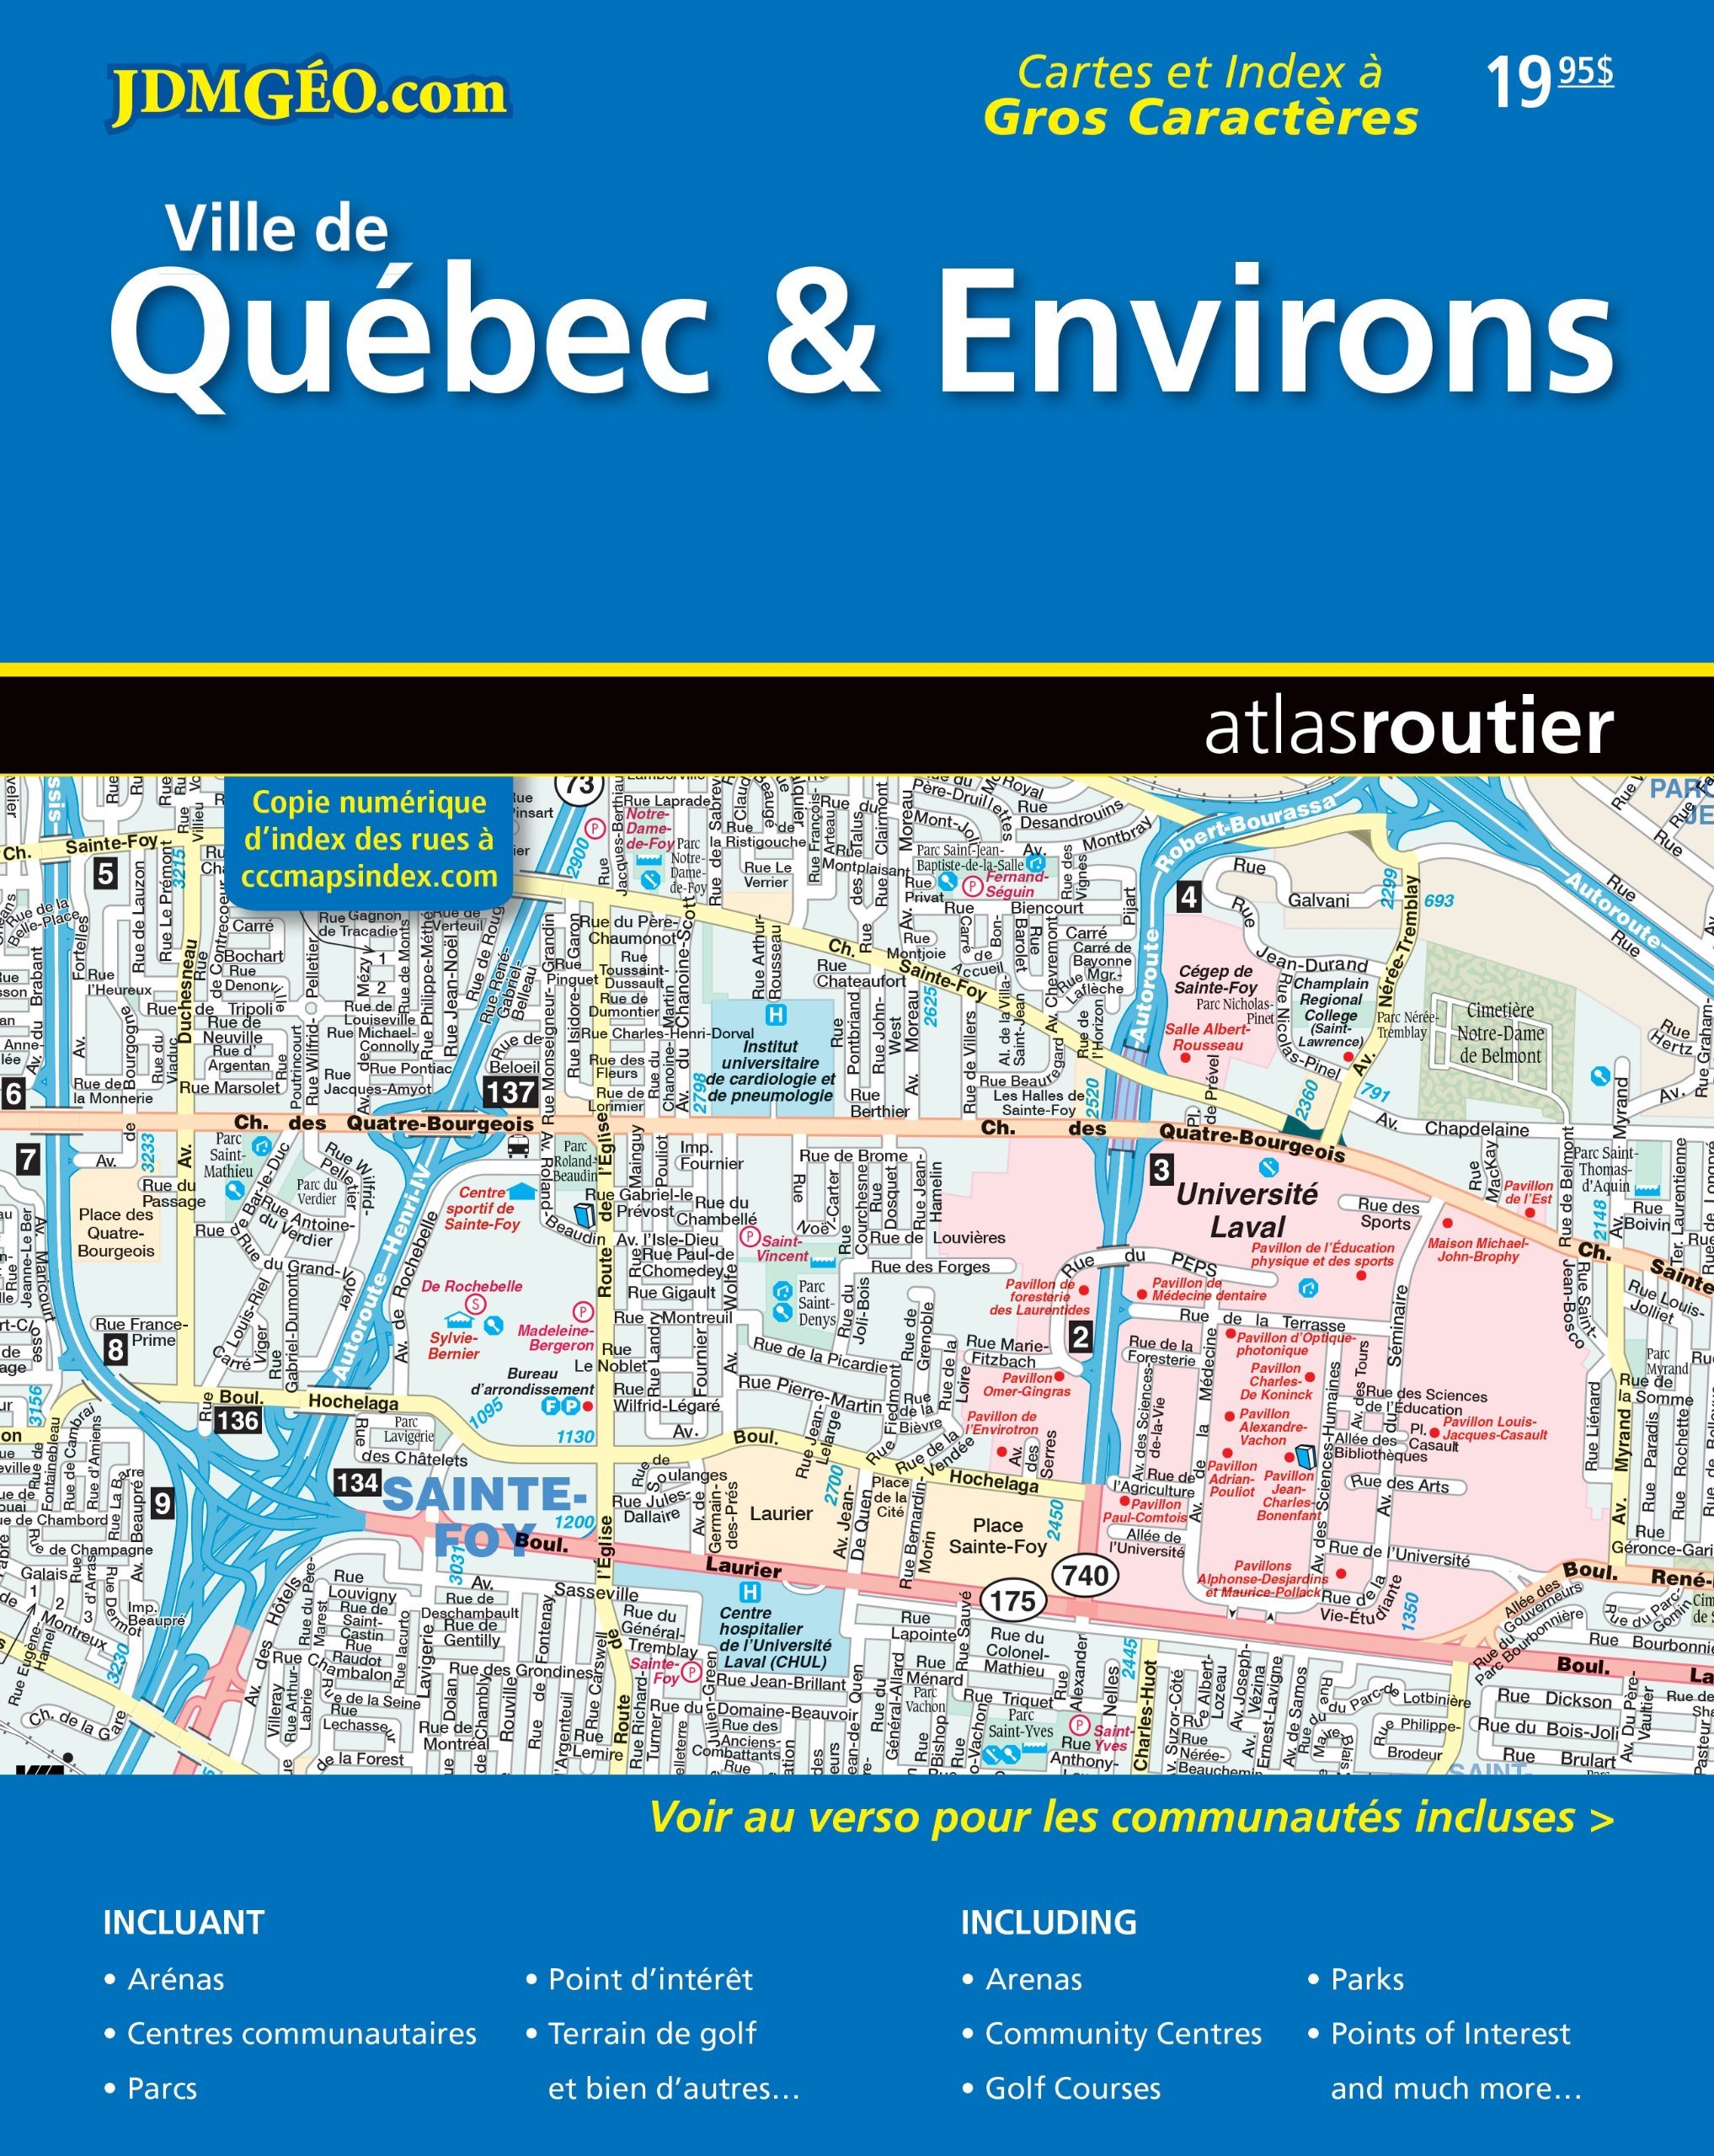 Québec & environs & Bas St-Laurent, Gaspésie, Côte-Nord